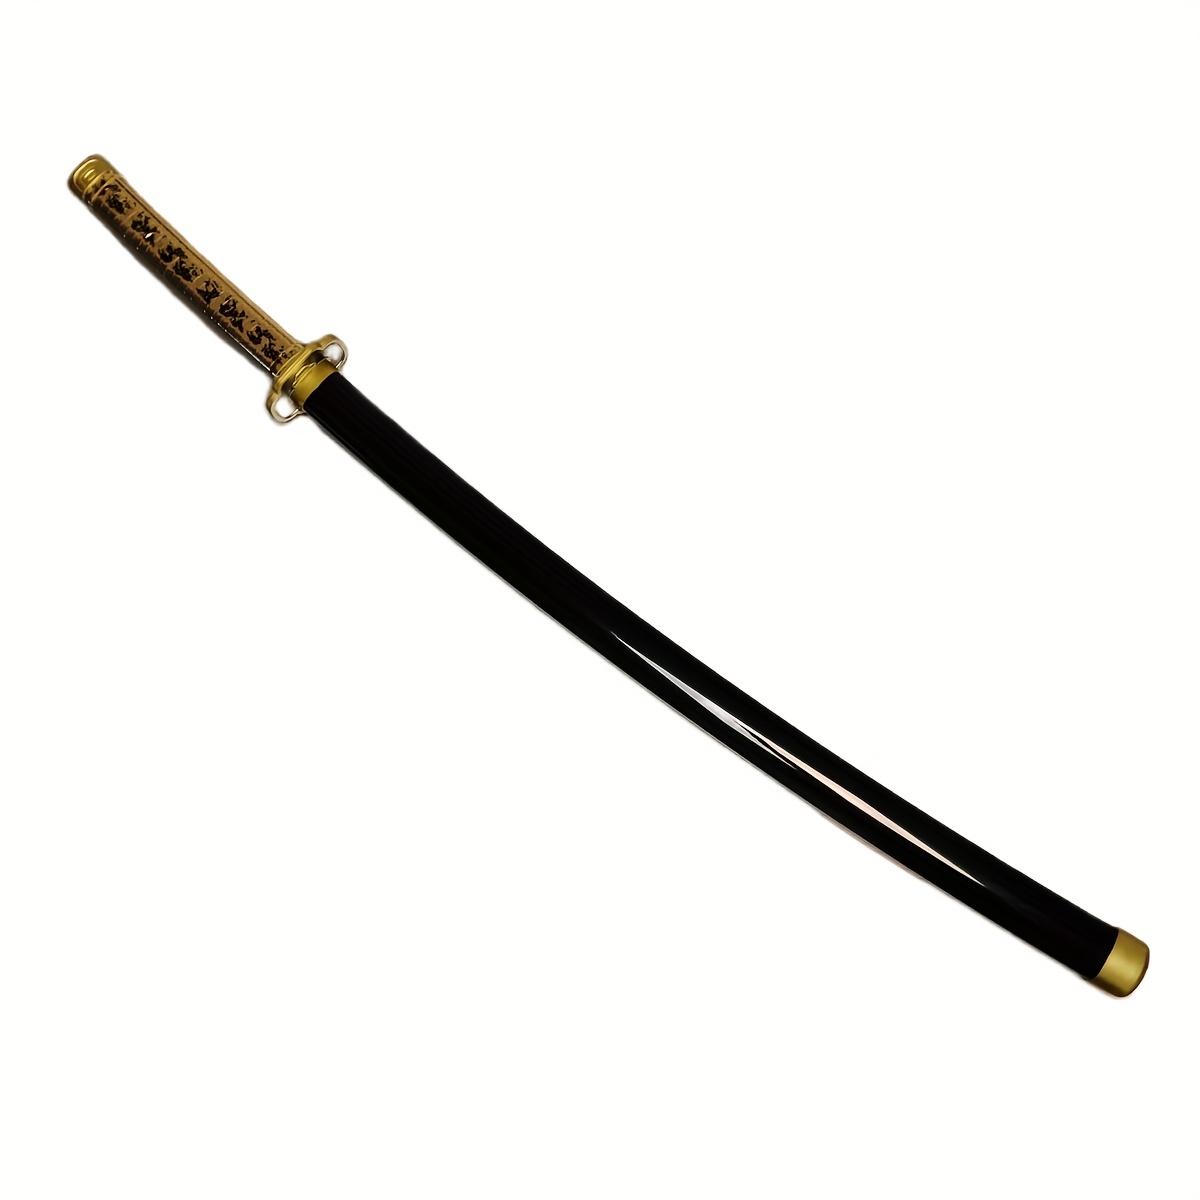 Acheter Support pour épée de samouraï en plastique, 10 pièces